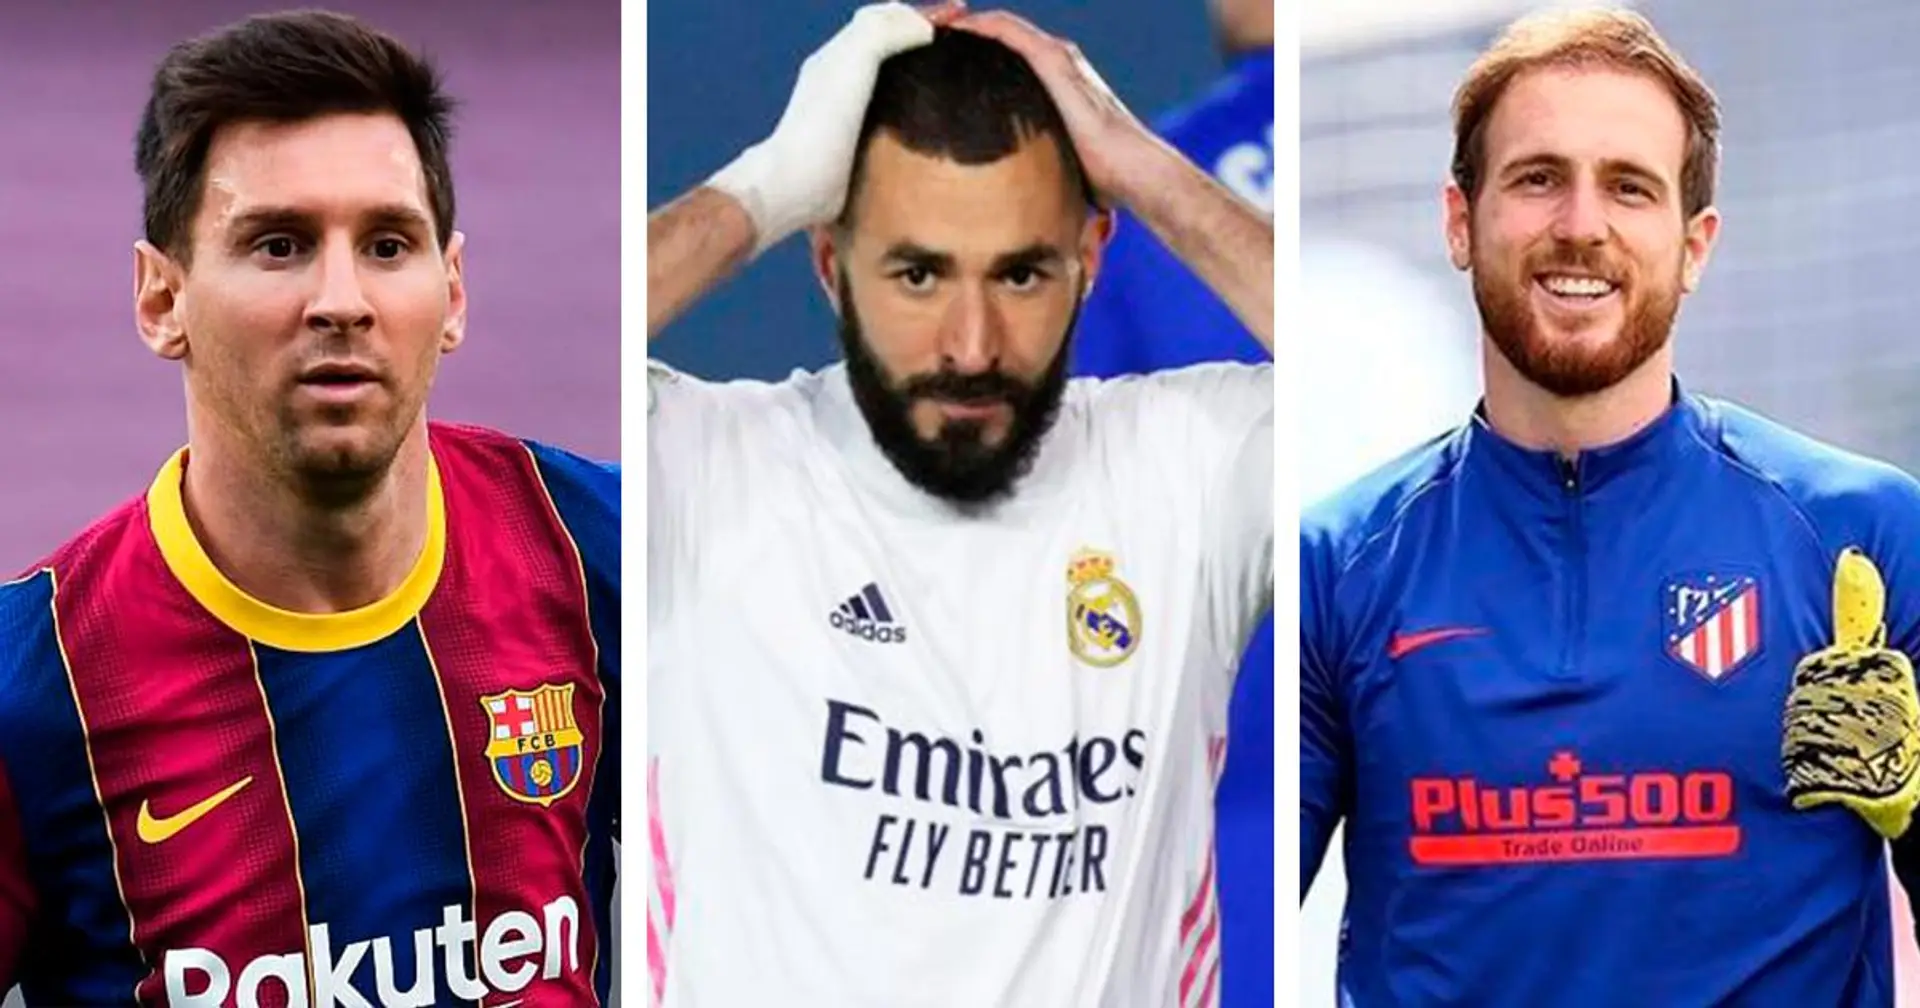 Le Top 10 des joueurs de la Liga les plus chers révélé: Benzema ne figure pas sur la liste